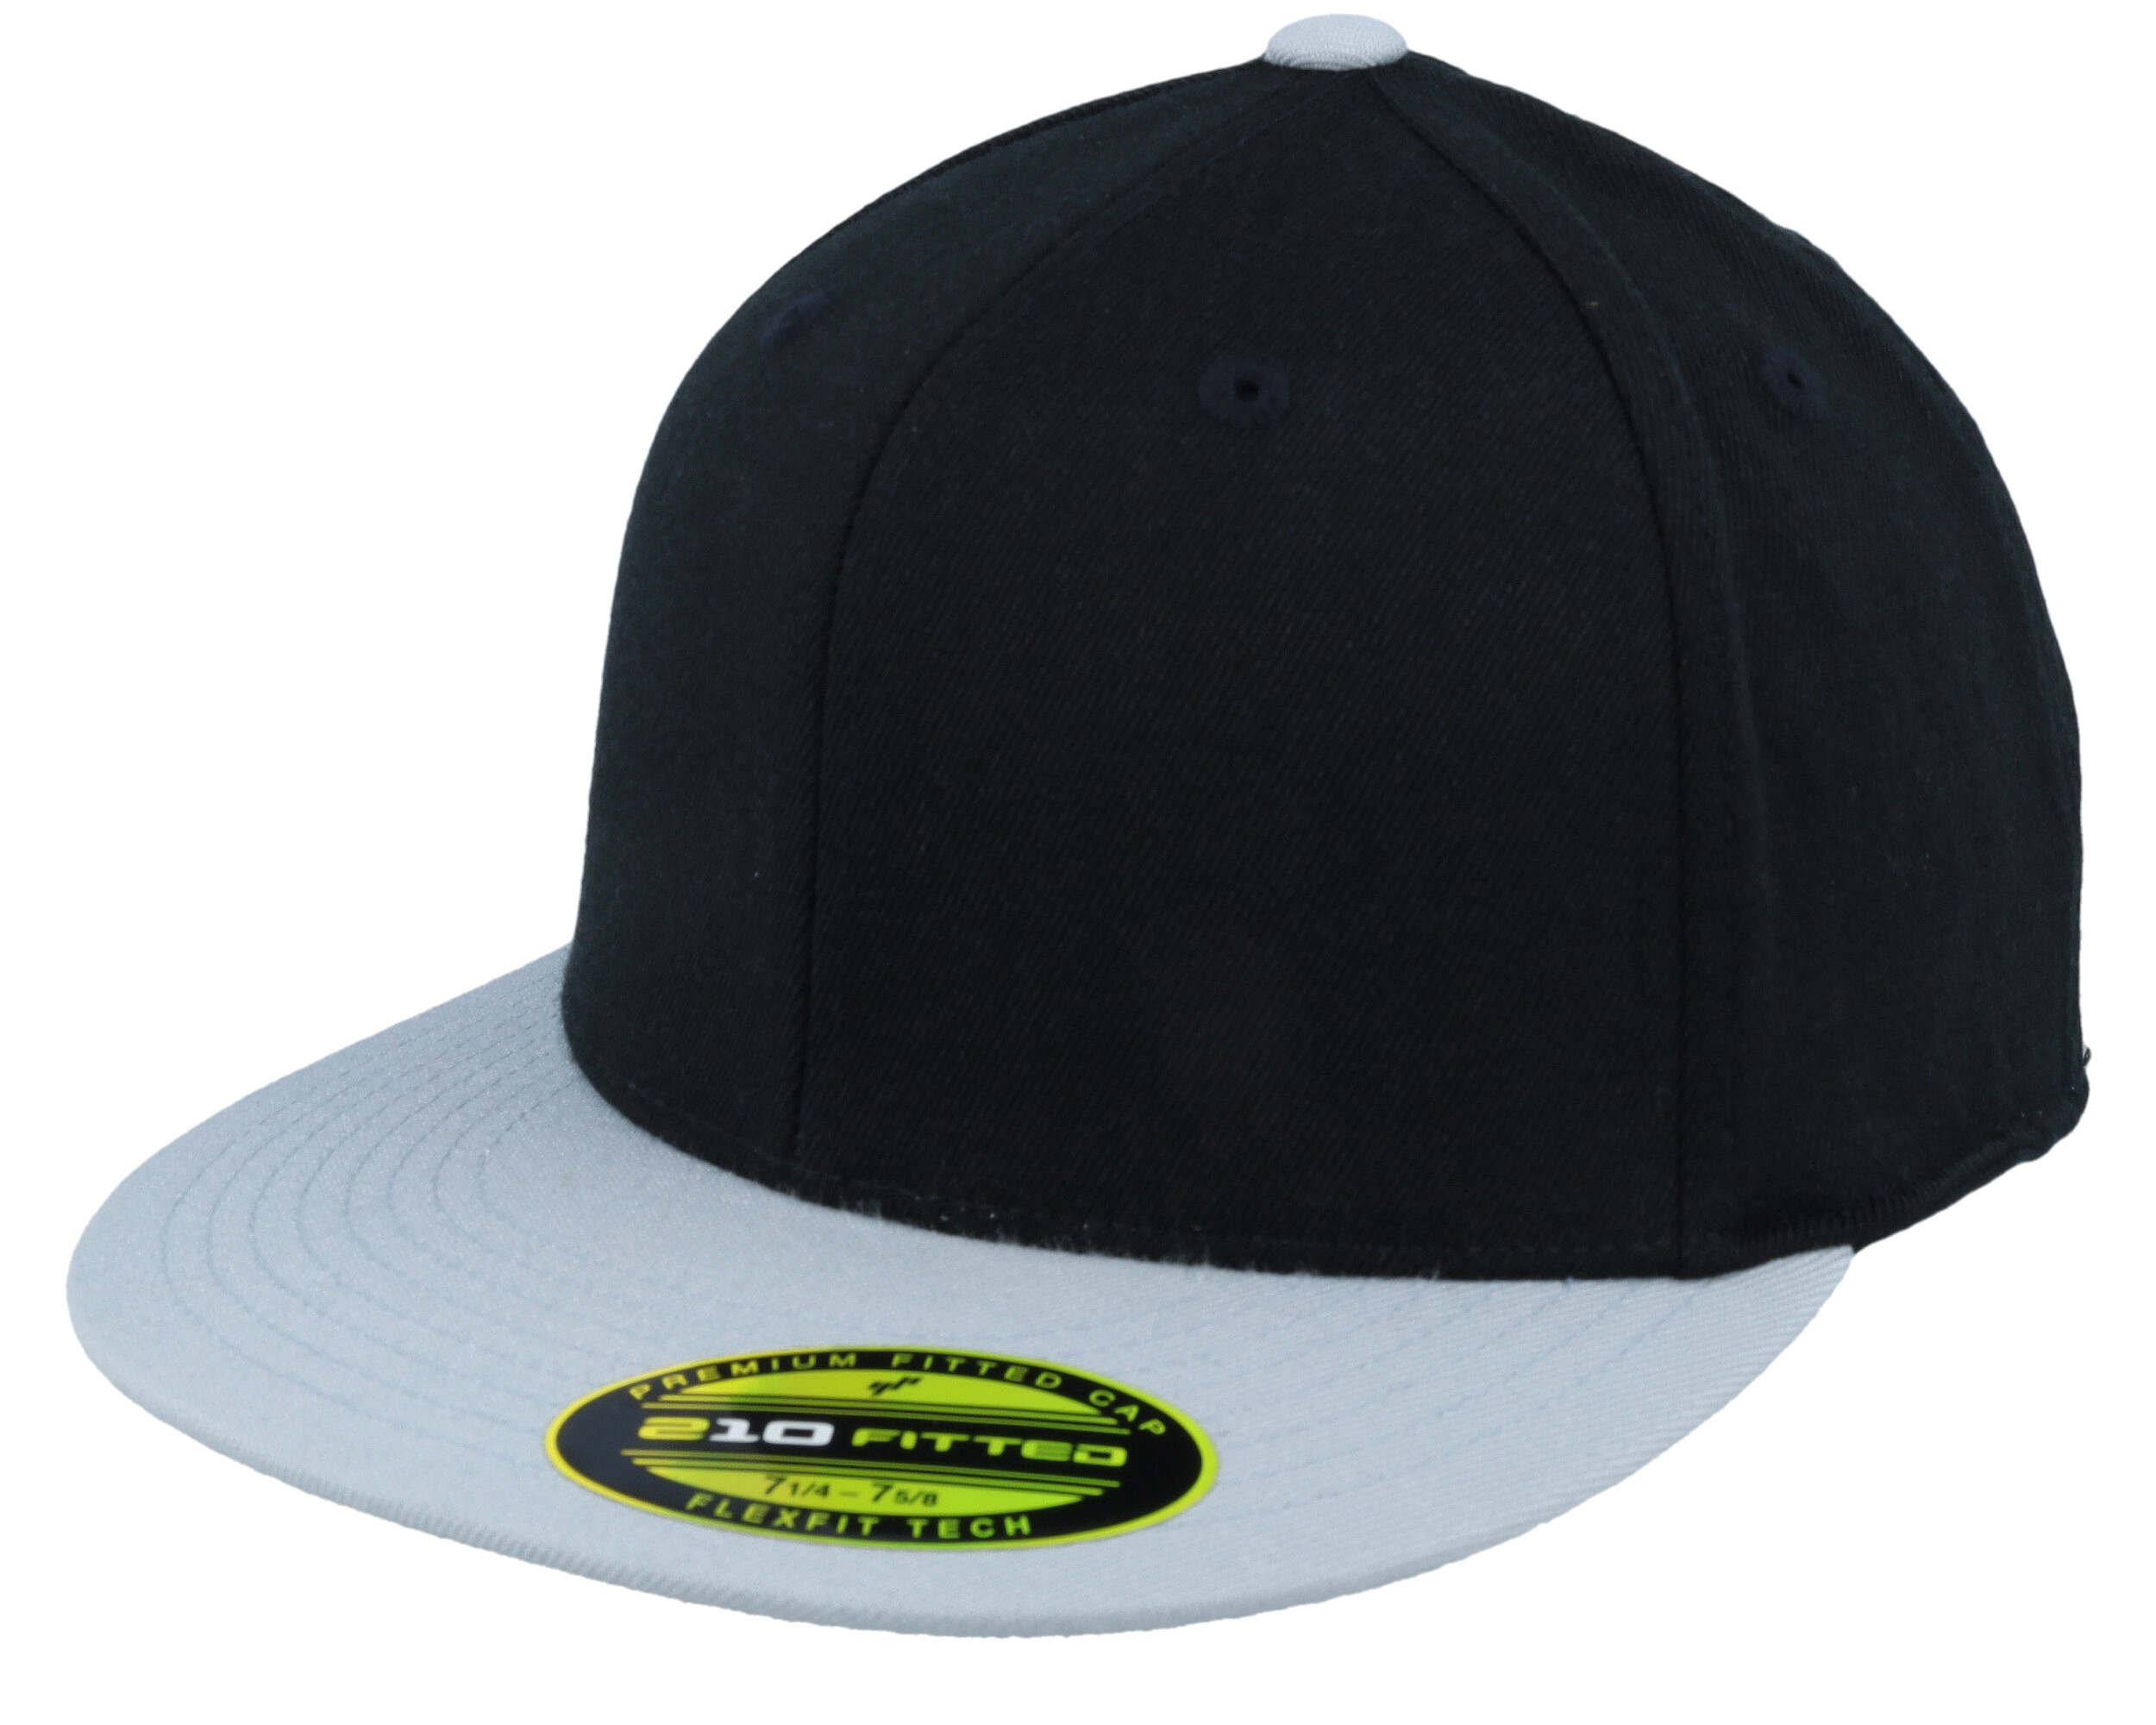 Premium Fitted cap 210 - 2-Tone Flexfit Black/Grey